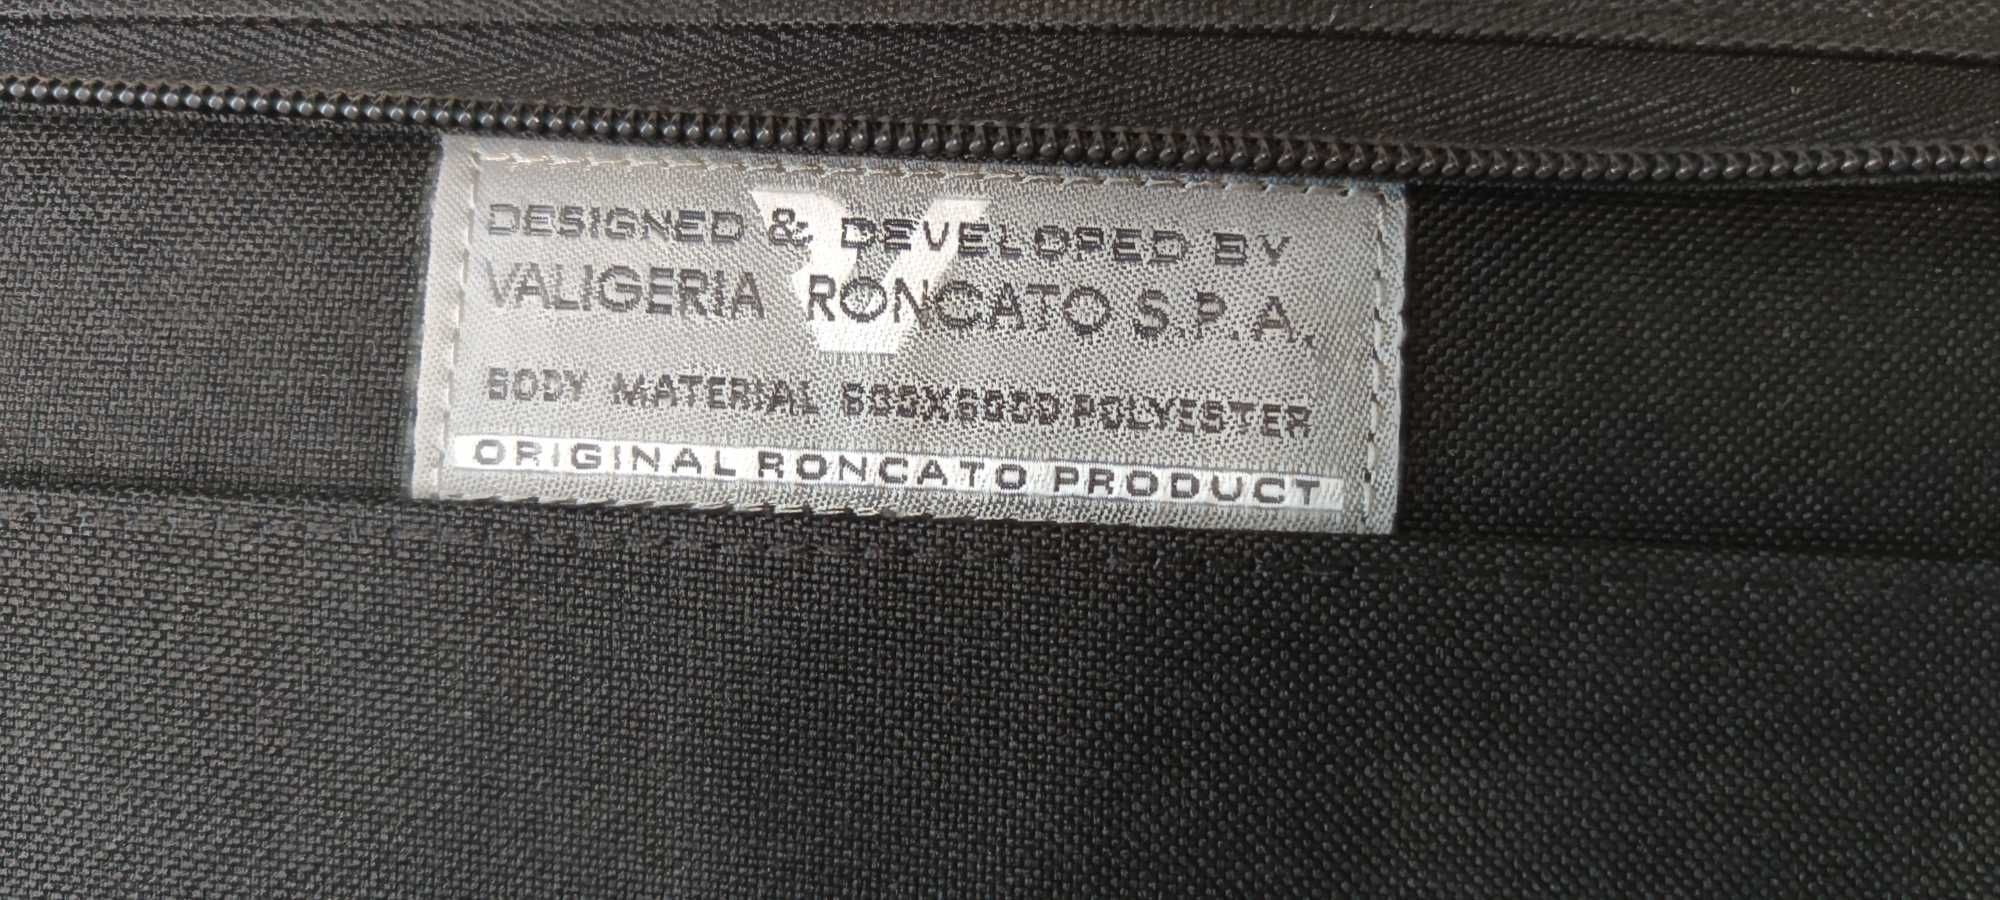 Папка портфель із прихованими ручками Valigeria rRoncato формат. А4